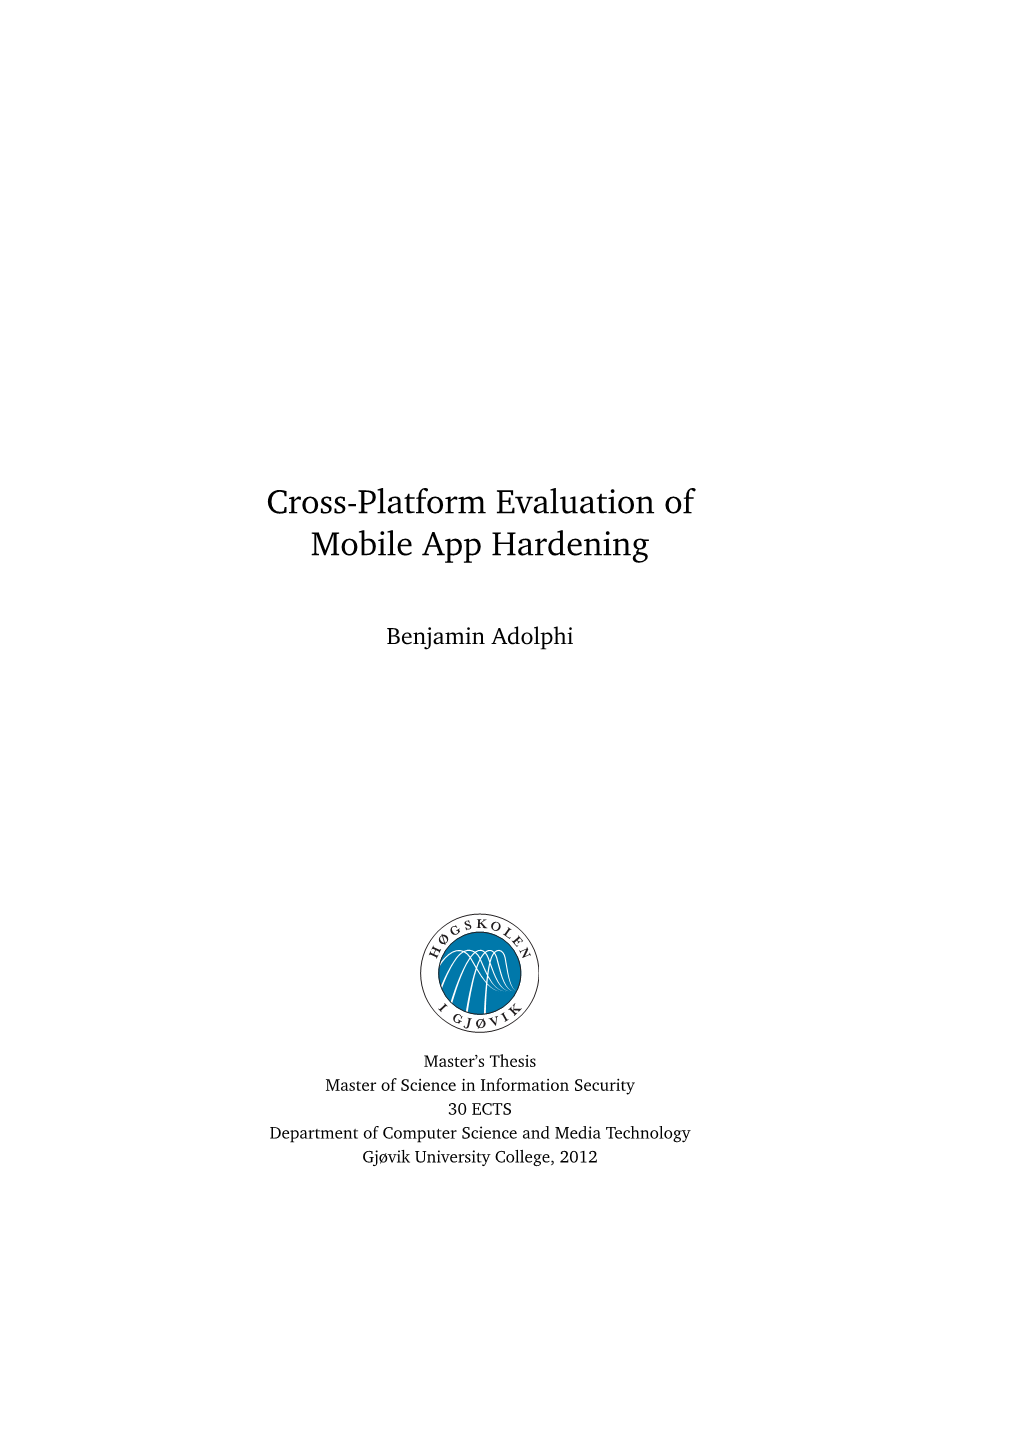 Cross-Platform Evaluation of Mobile App Hardening